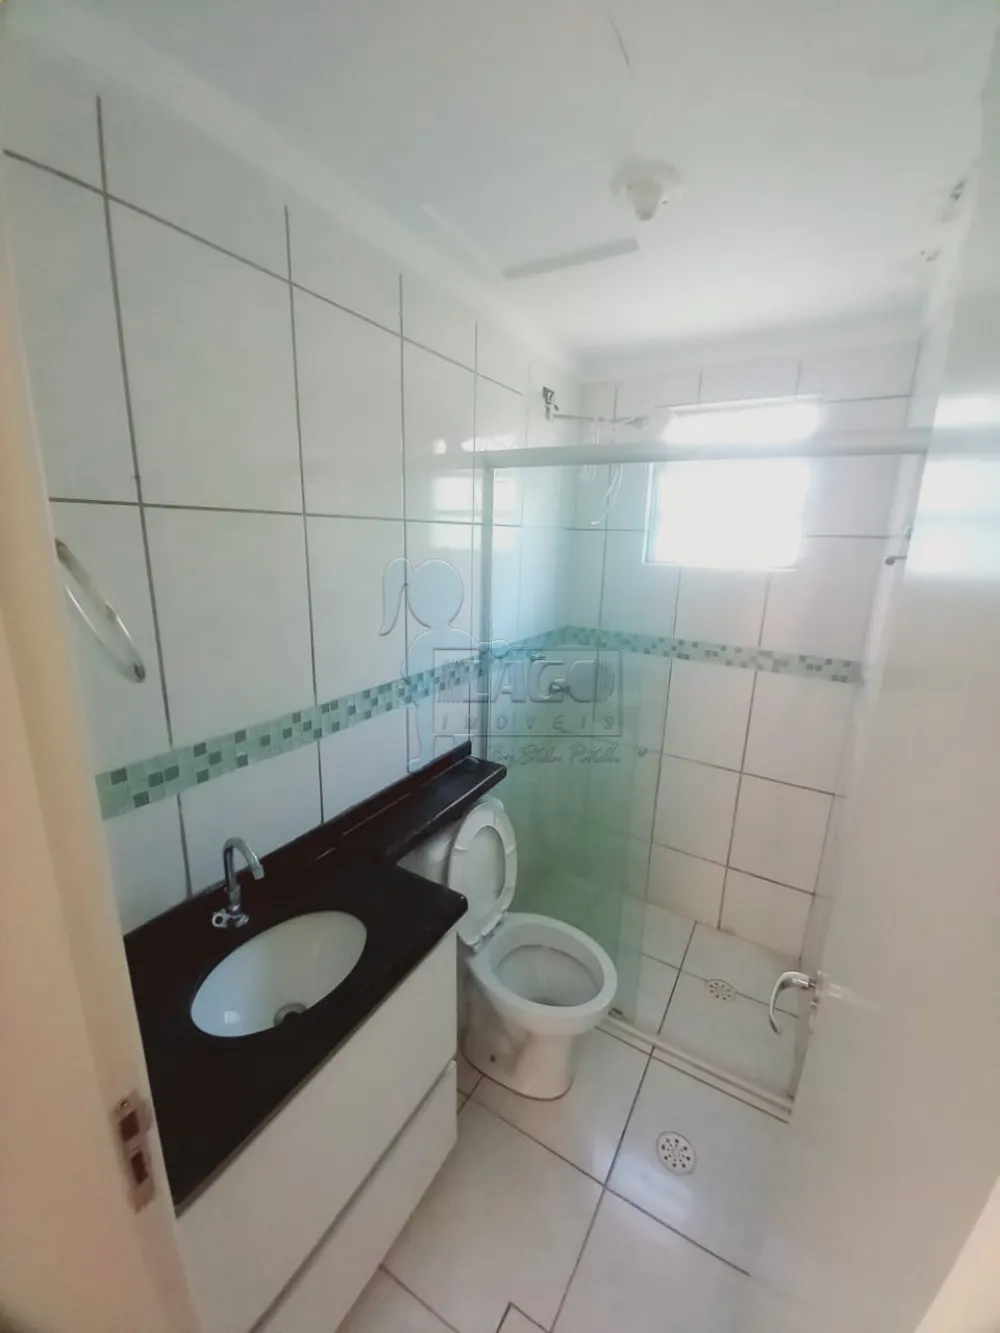 Alugar Apartamentos / Cobertura em Ribeirão Preto R$ 1.500,00 - Foto 17